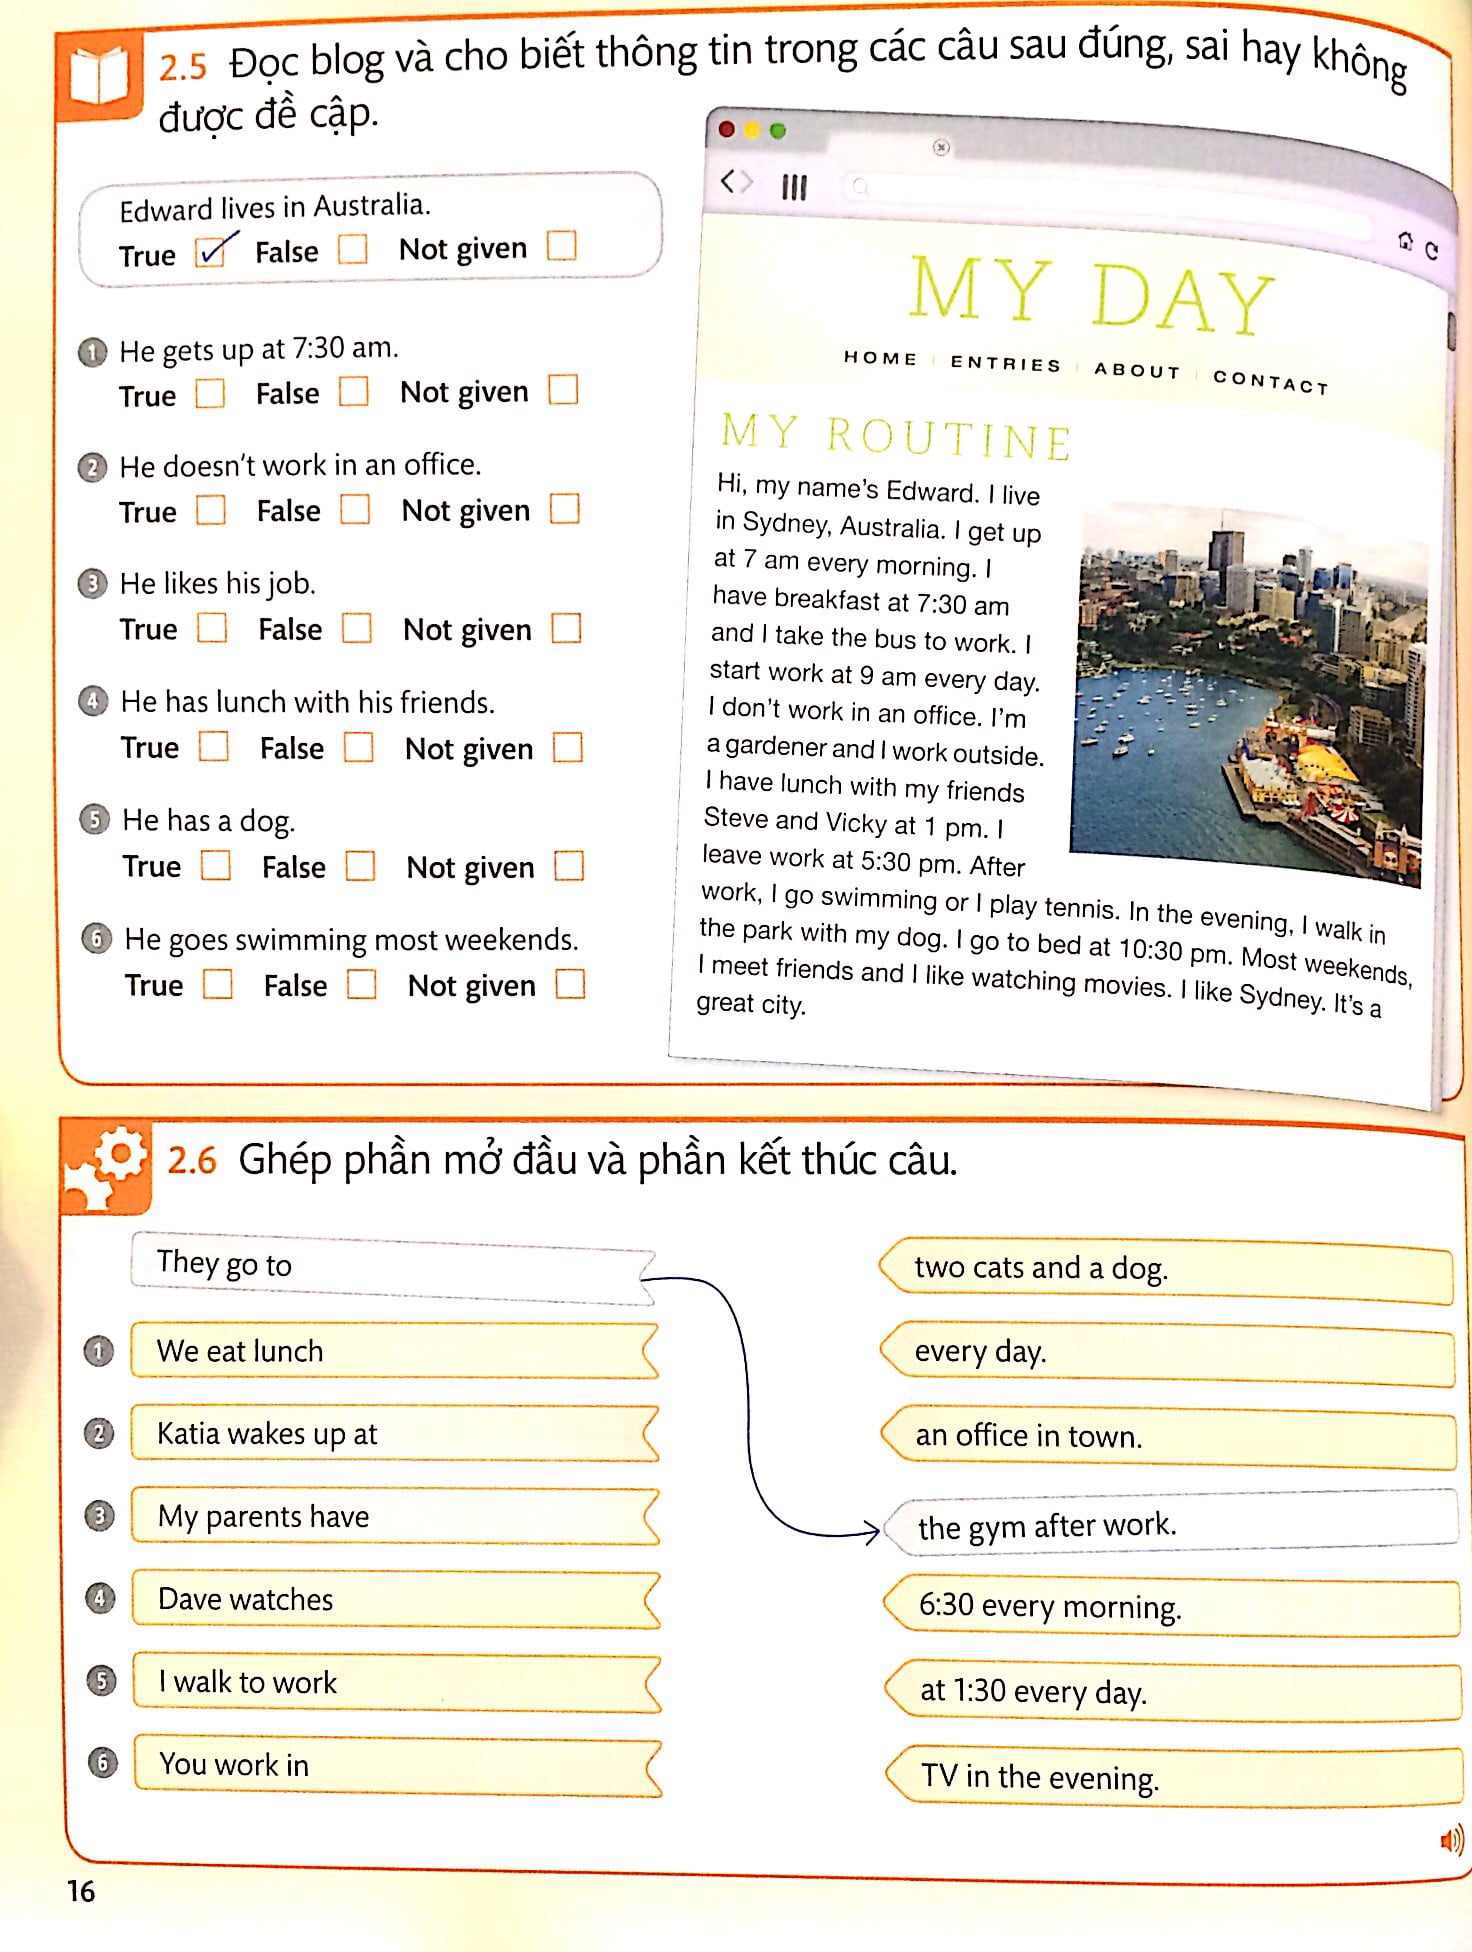 Tiếng Anh Cho Mọi Người - English For Everyone - Level 2 Beginner - Practice Book Kèm CD PDF